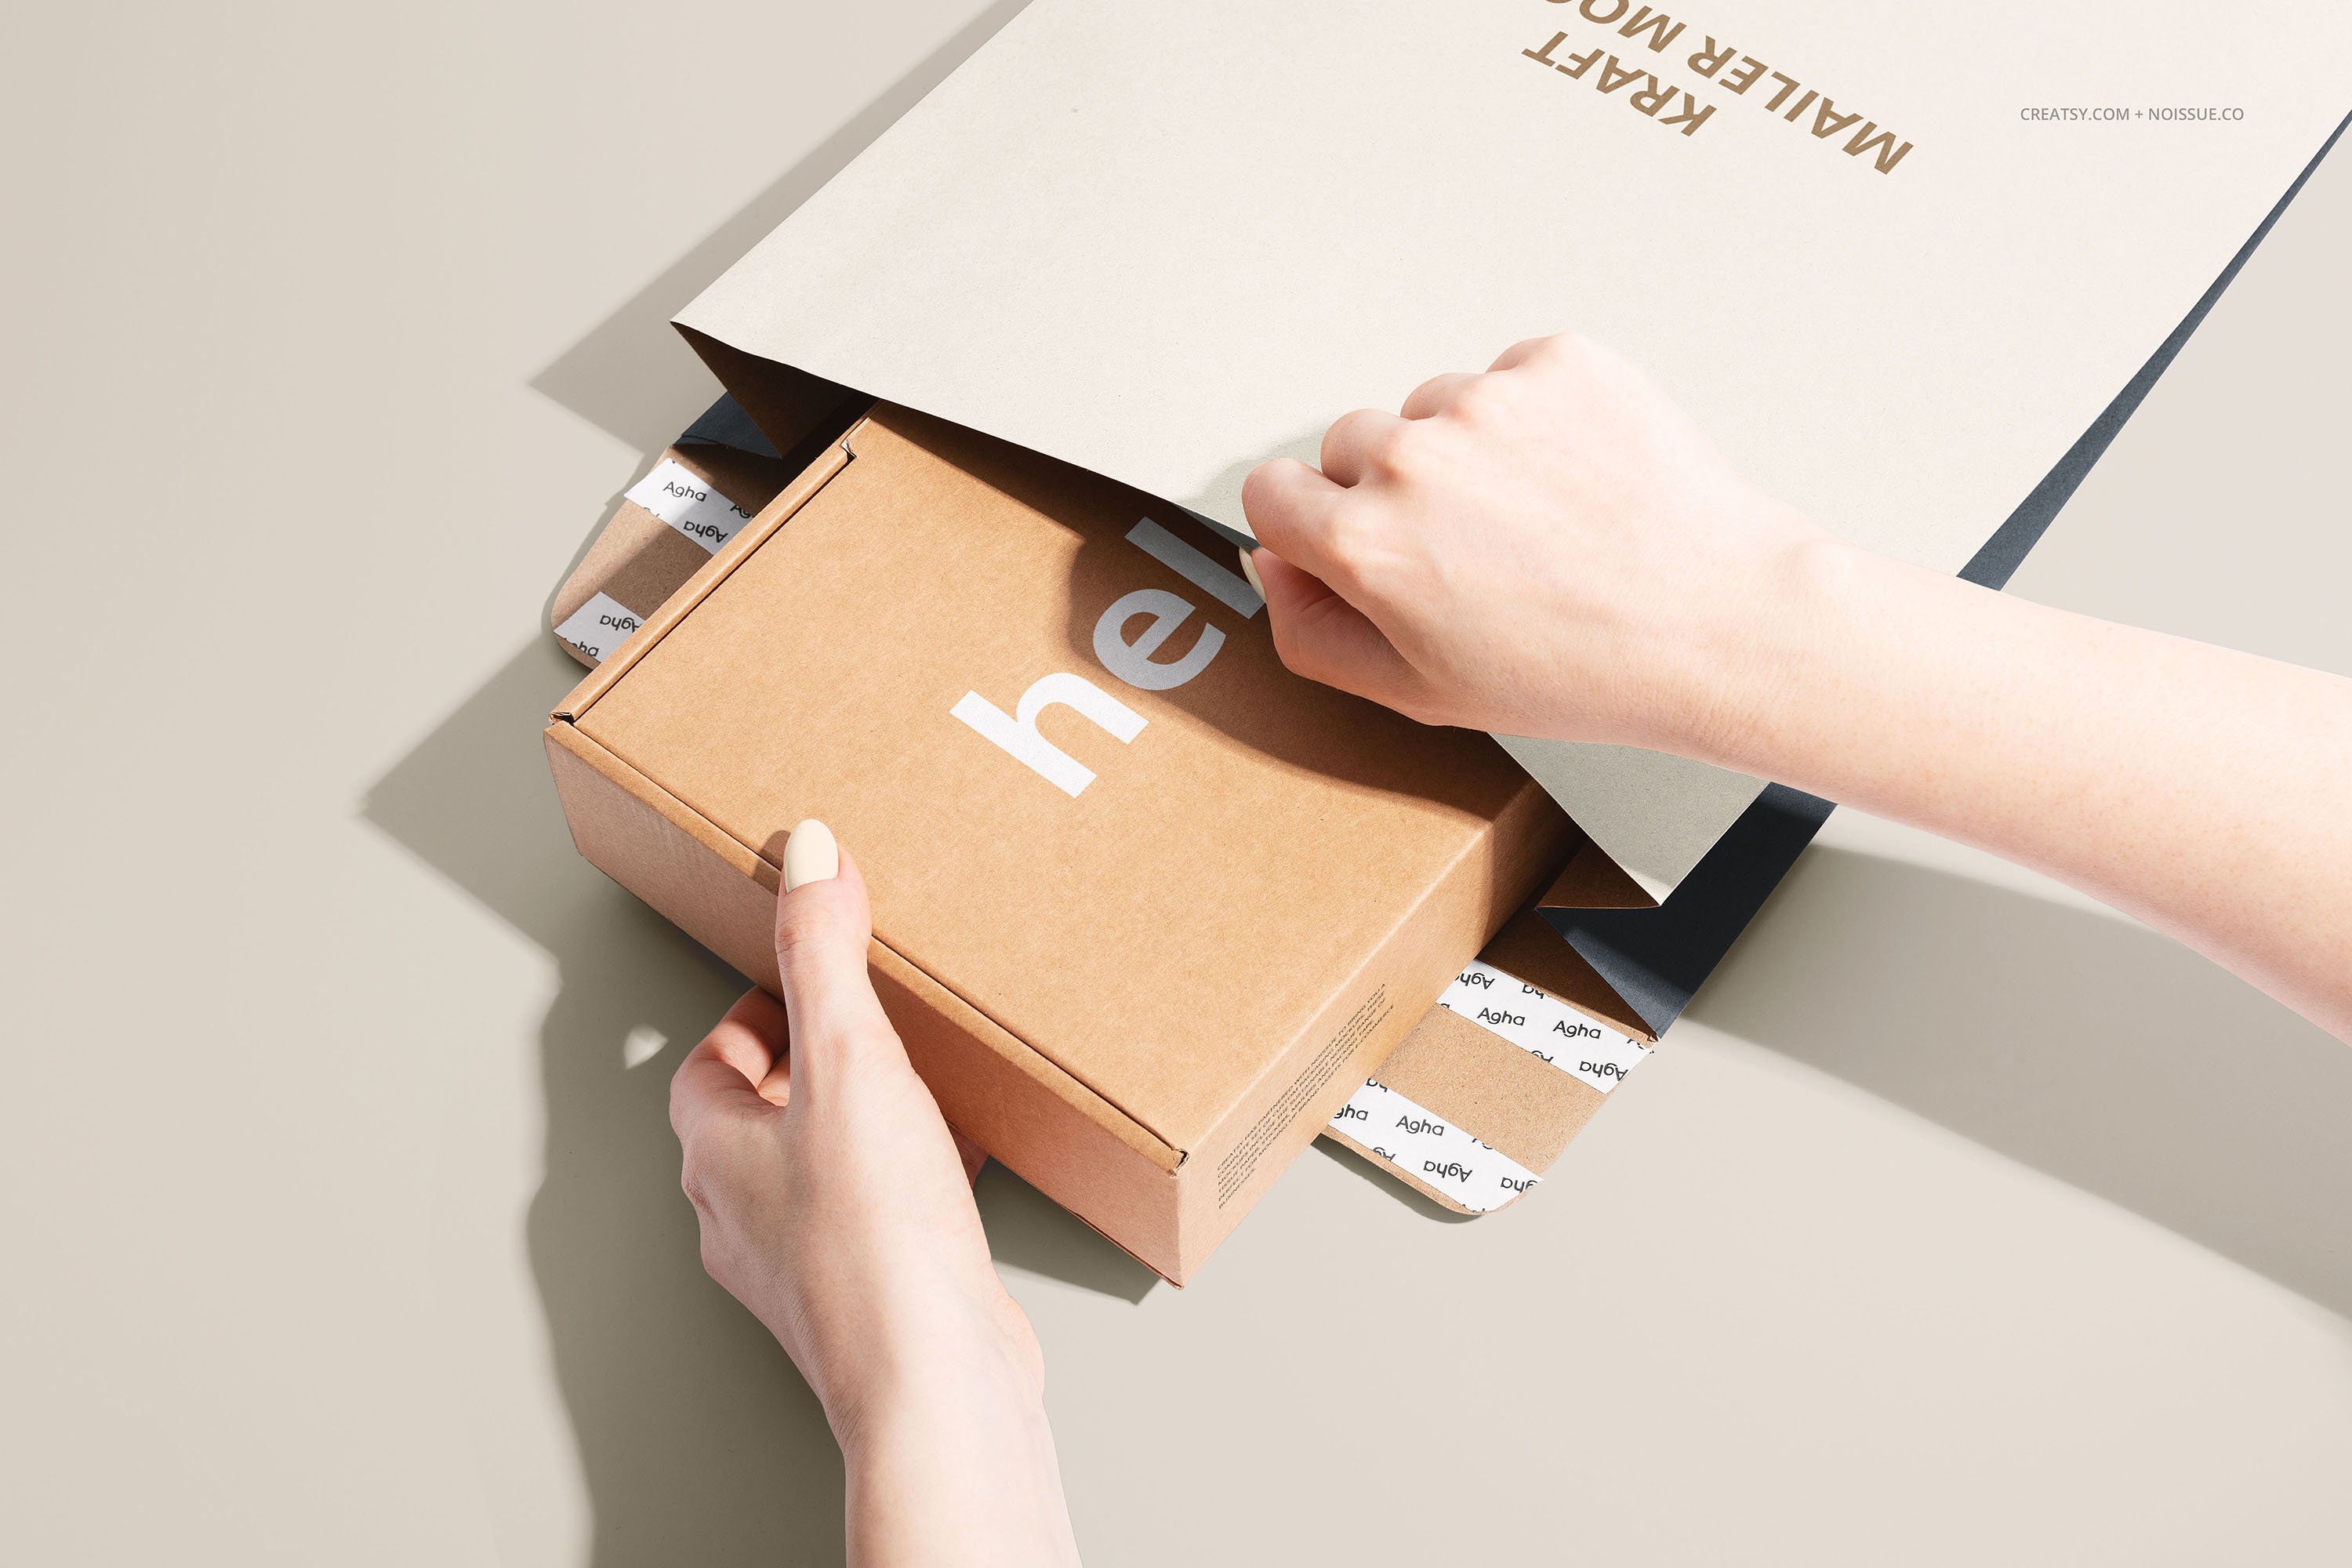 571 22款卡夫牛皮纸产品包装纸盒文件袋信封设计展示贴图样机合集 Noissue Kraft Mailer Mockup Set